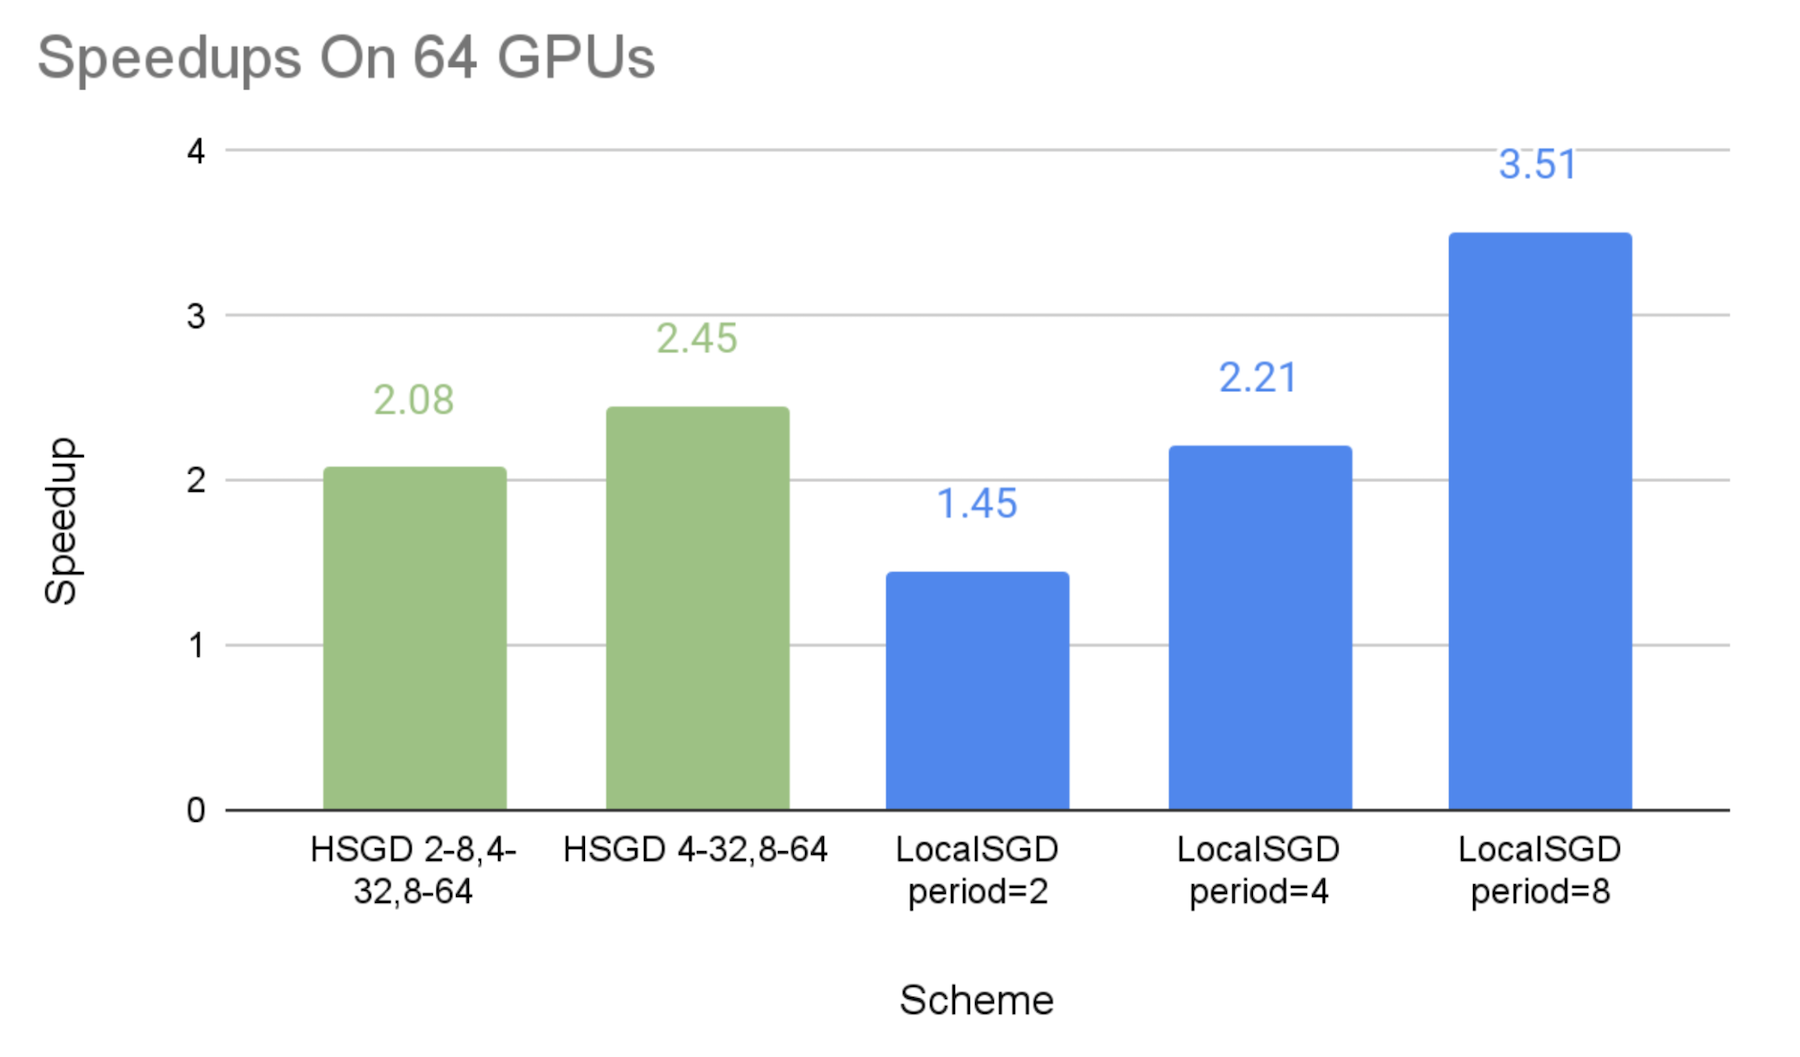 Speedups on 64 GPUs